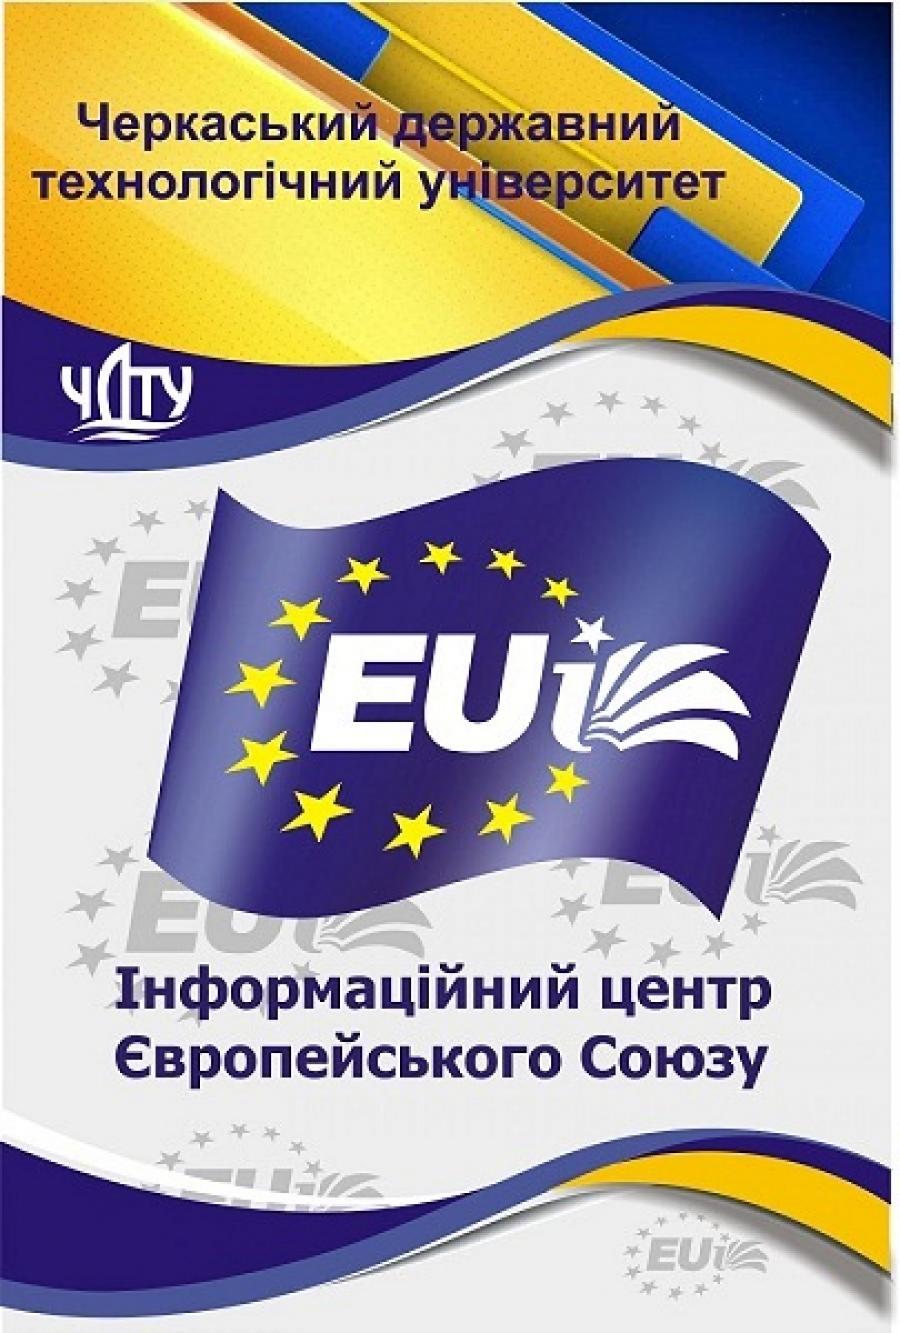 У ЧДТУ пройде гра «Eurosession» для молоді на тему Європейського Союзу